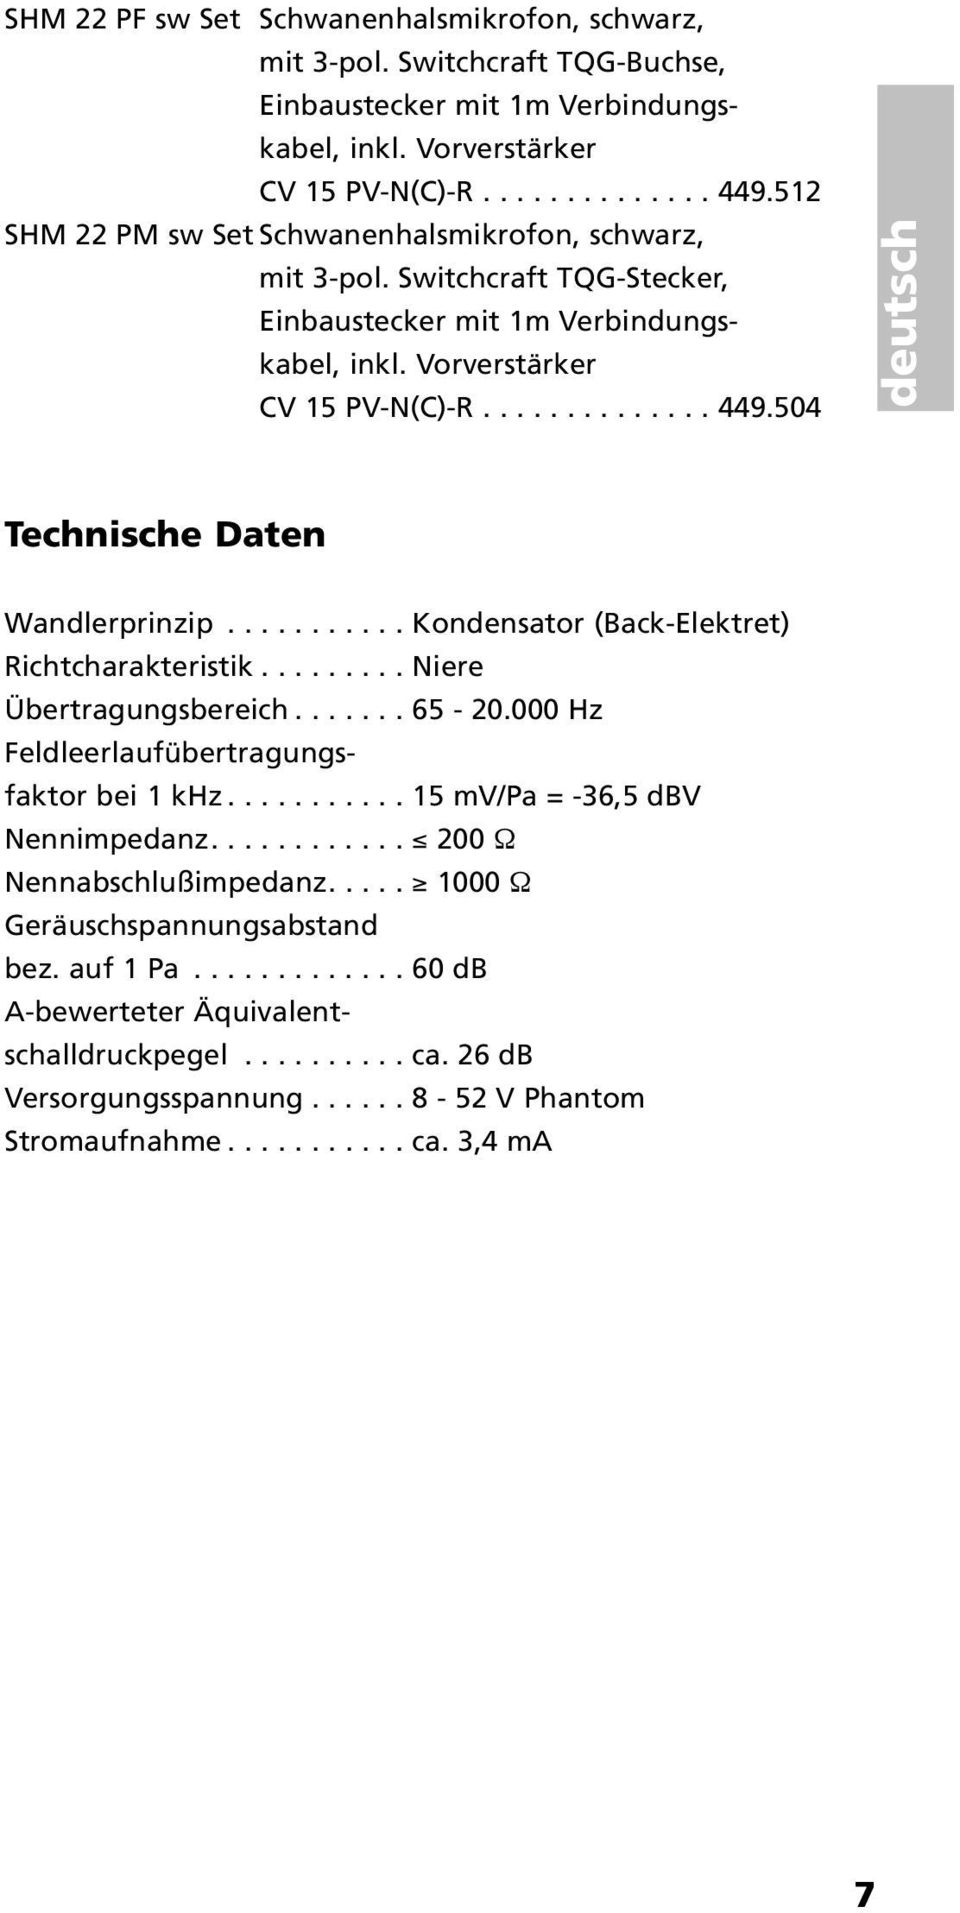 504 deutsch Technische Daten Wandlerprinzip........... Kondensator (Back-Elektret) Richtcharakteristik......... Niere Übertragungsbereich....... 65-20.000 Hz Feldleerlaufübertragungsfaktor bei 1 khz.